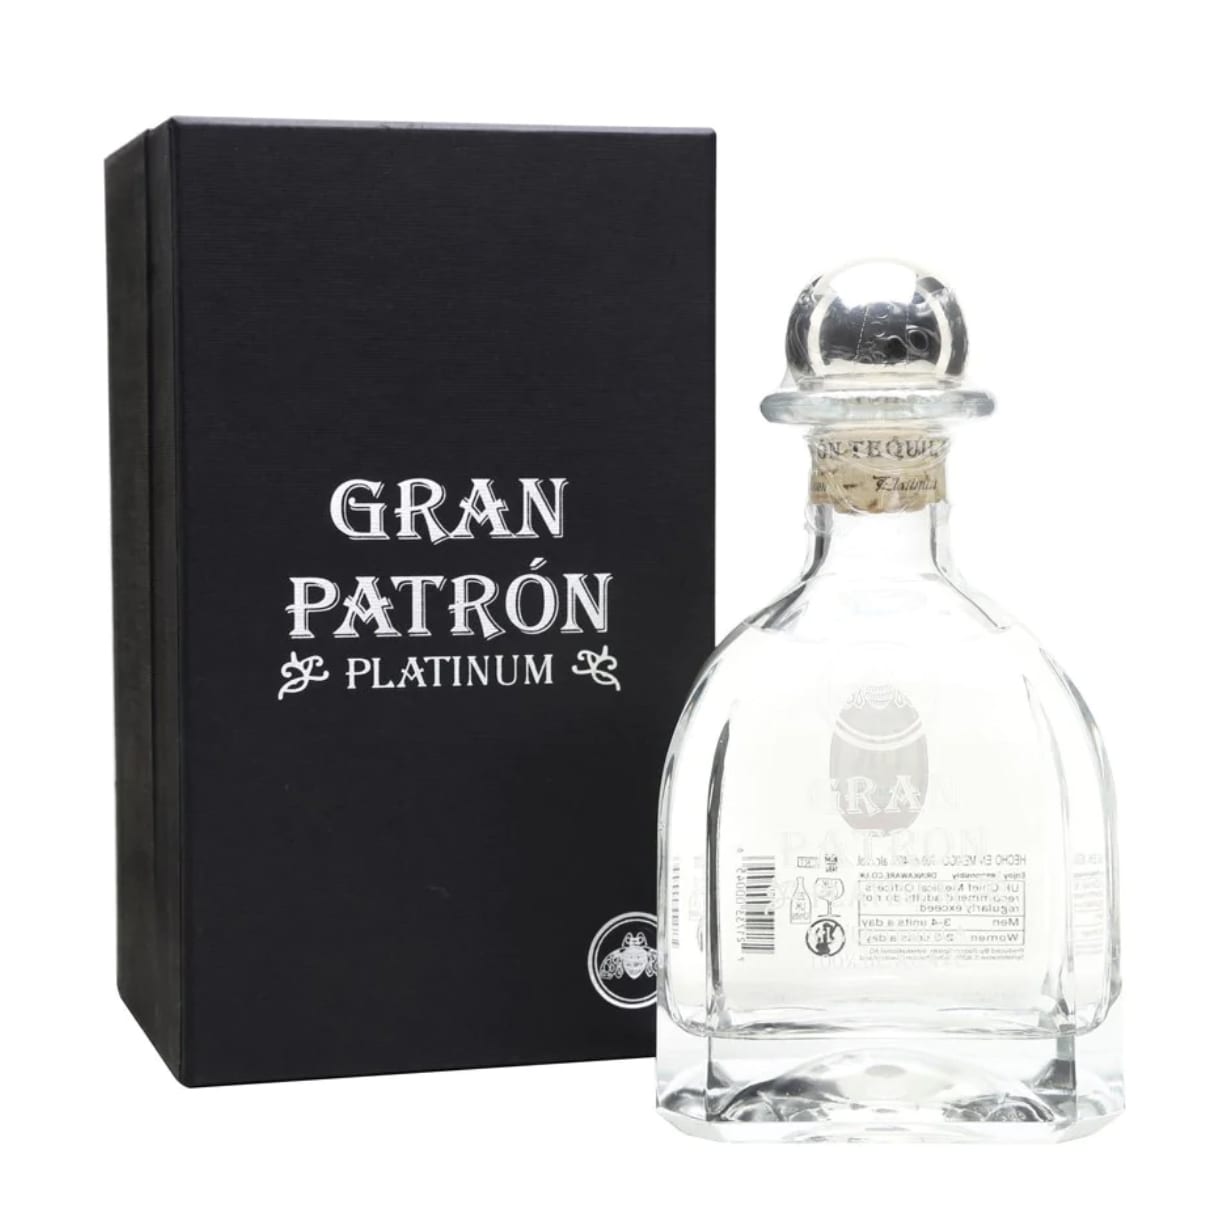 Gran Platinum Tequila